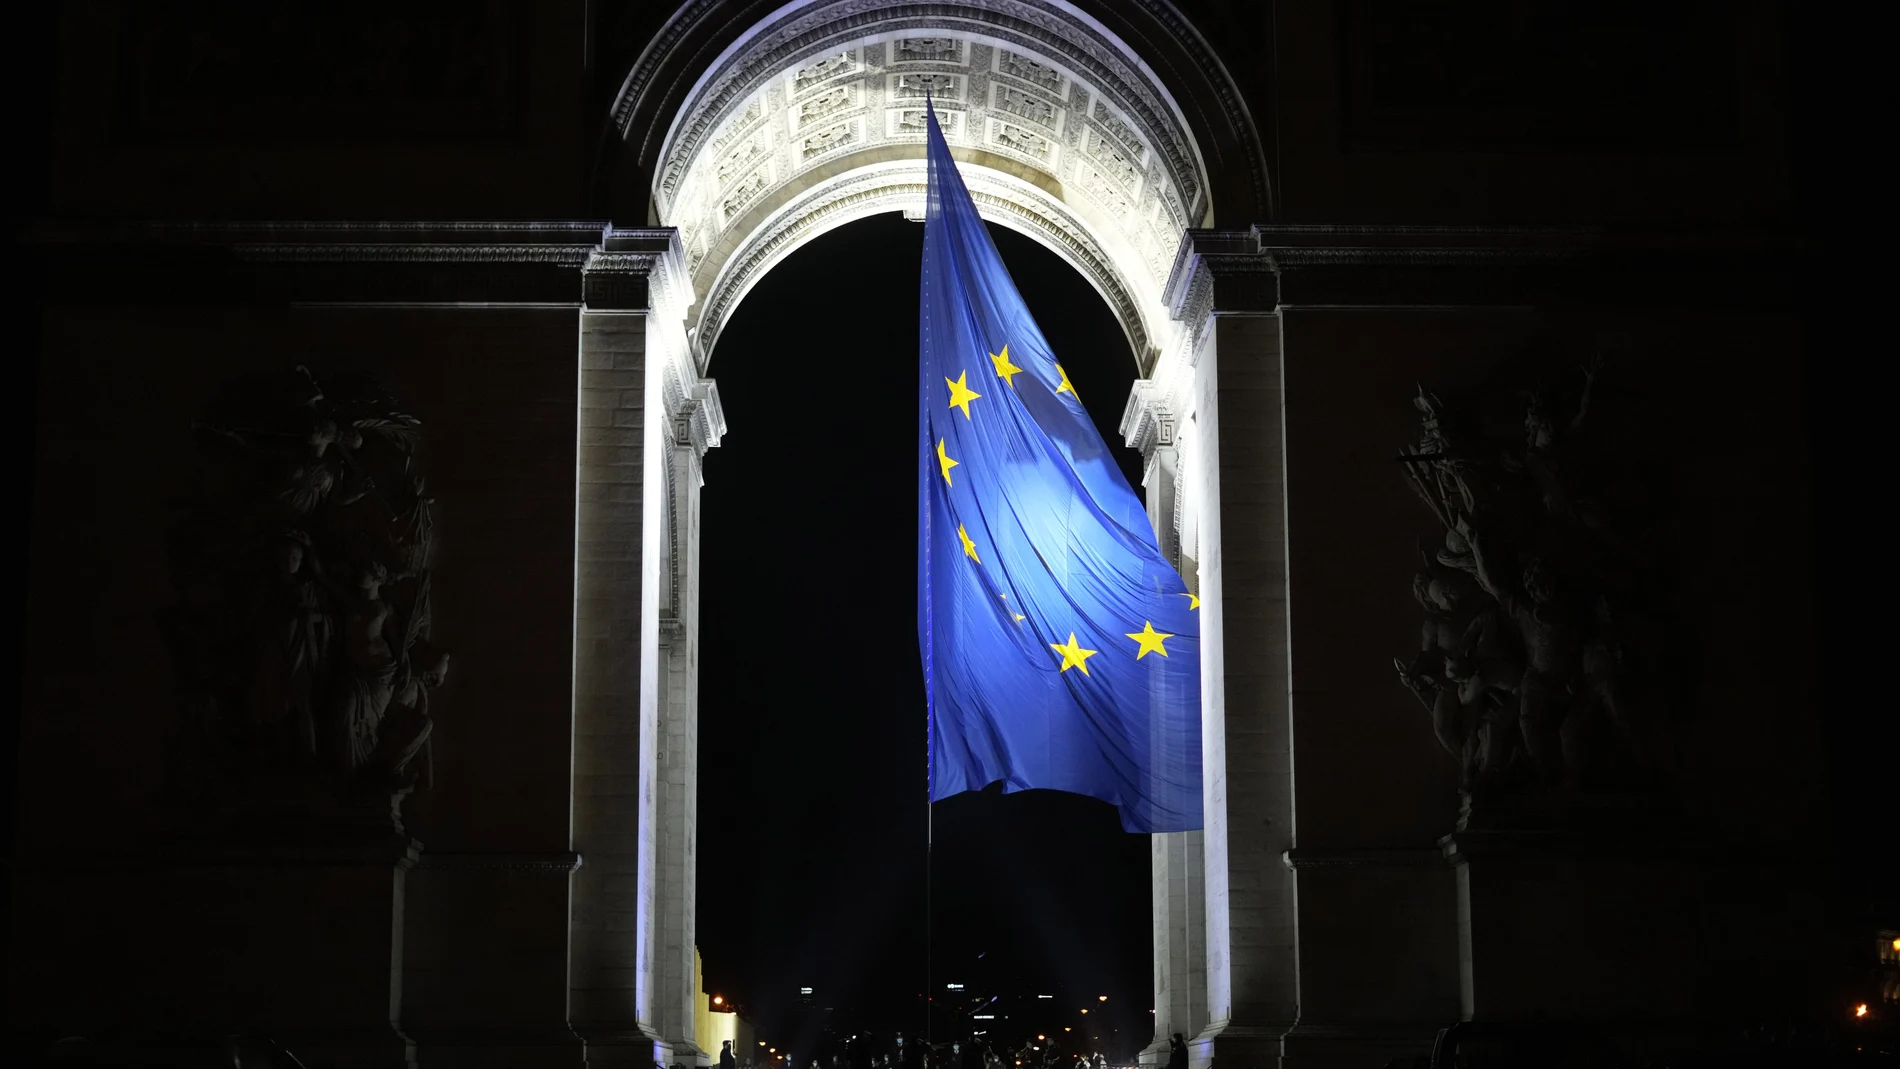 La bandera europea izada en el Arco del Triunfo y ahora retirada por presiones